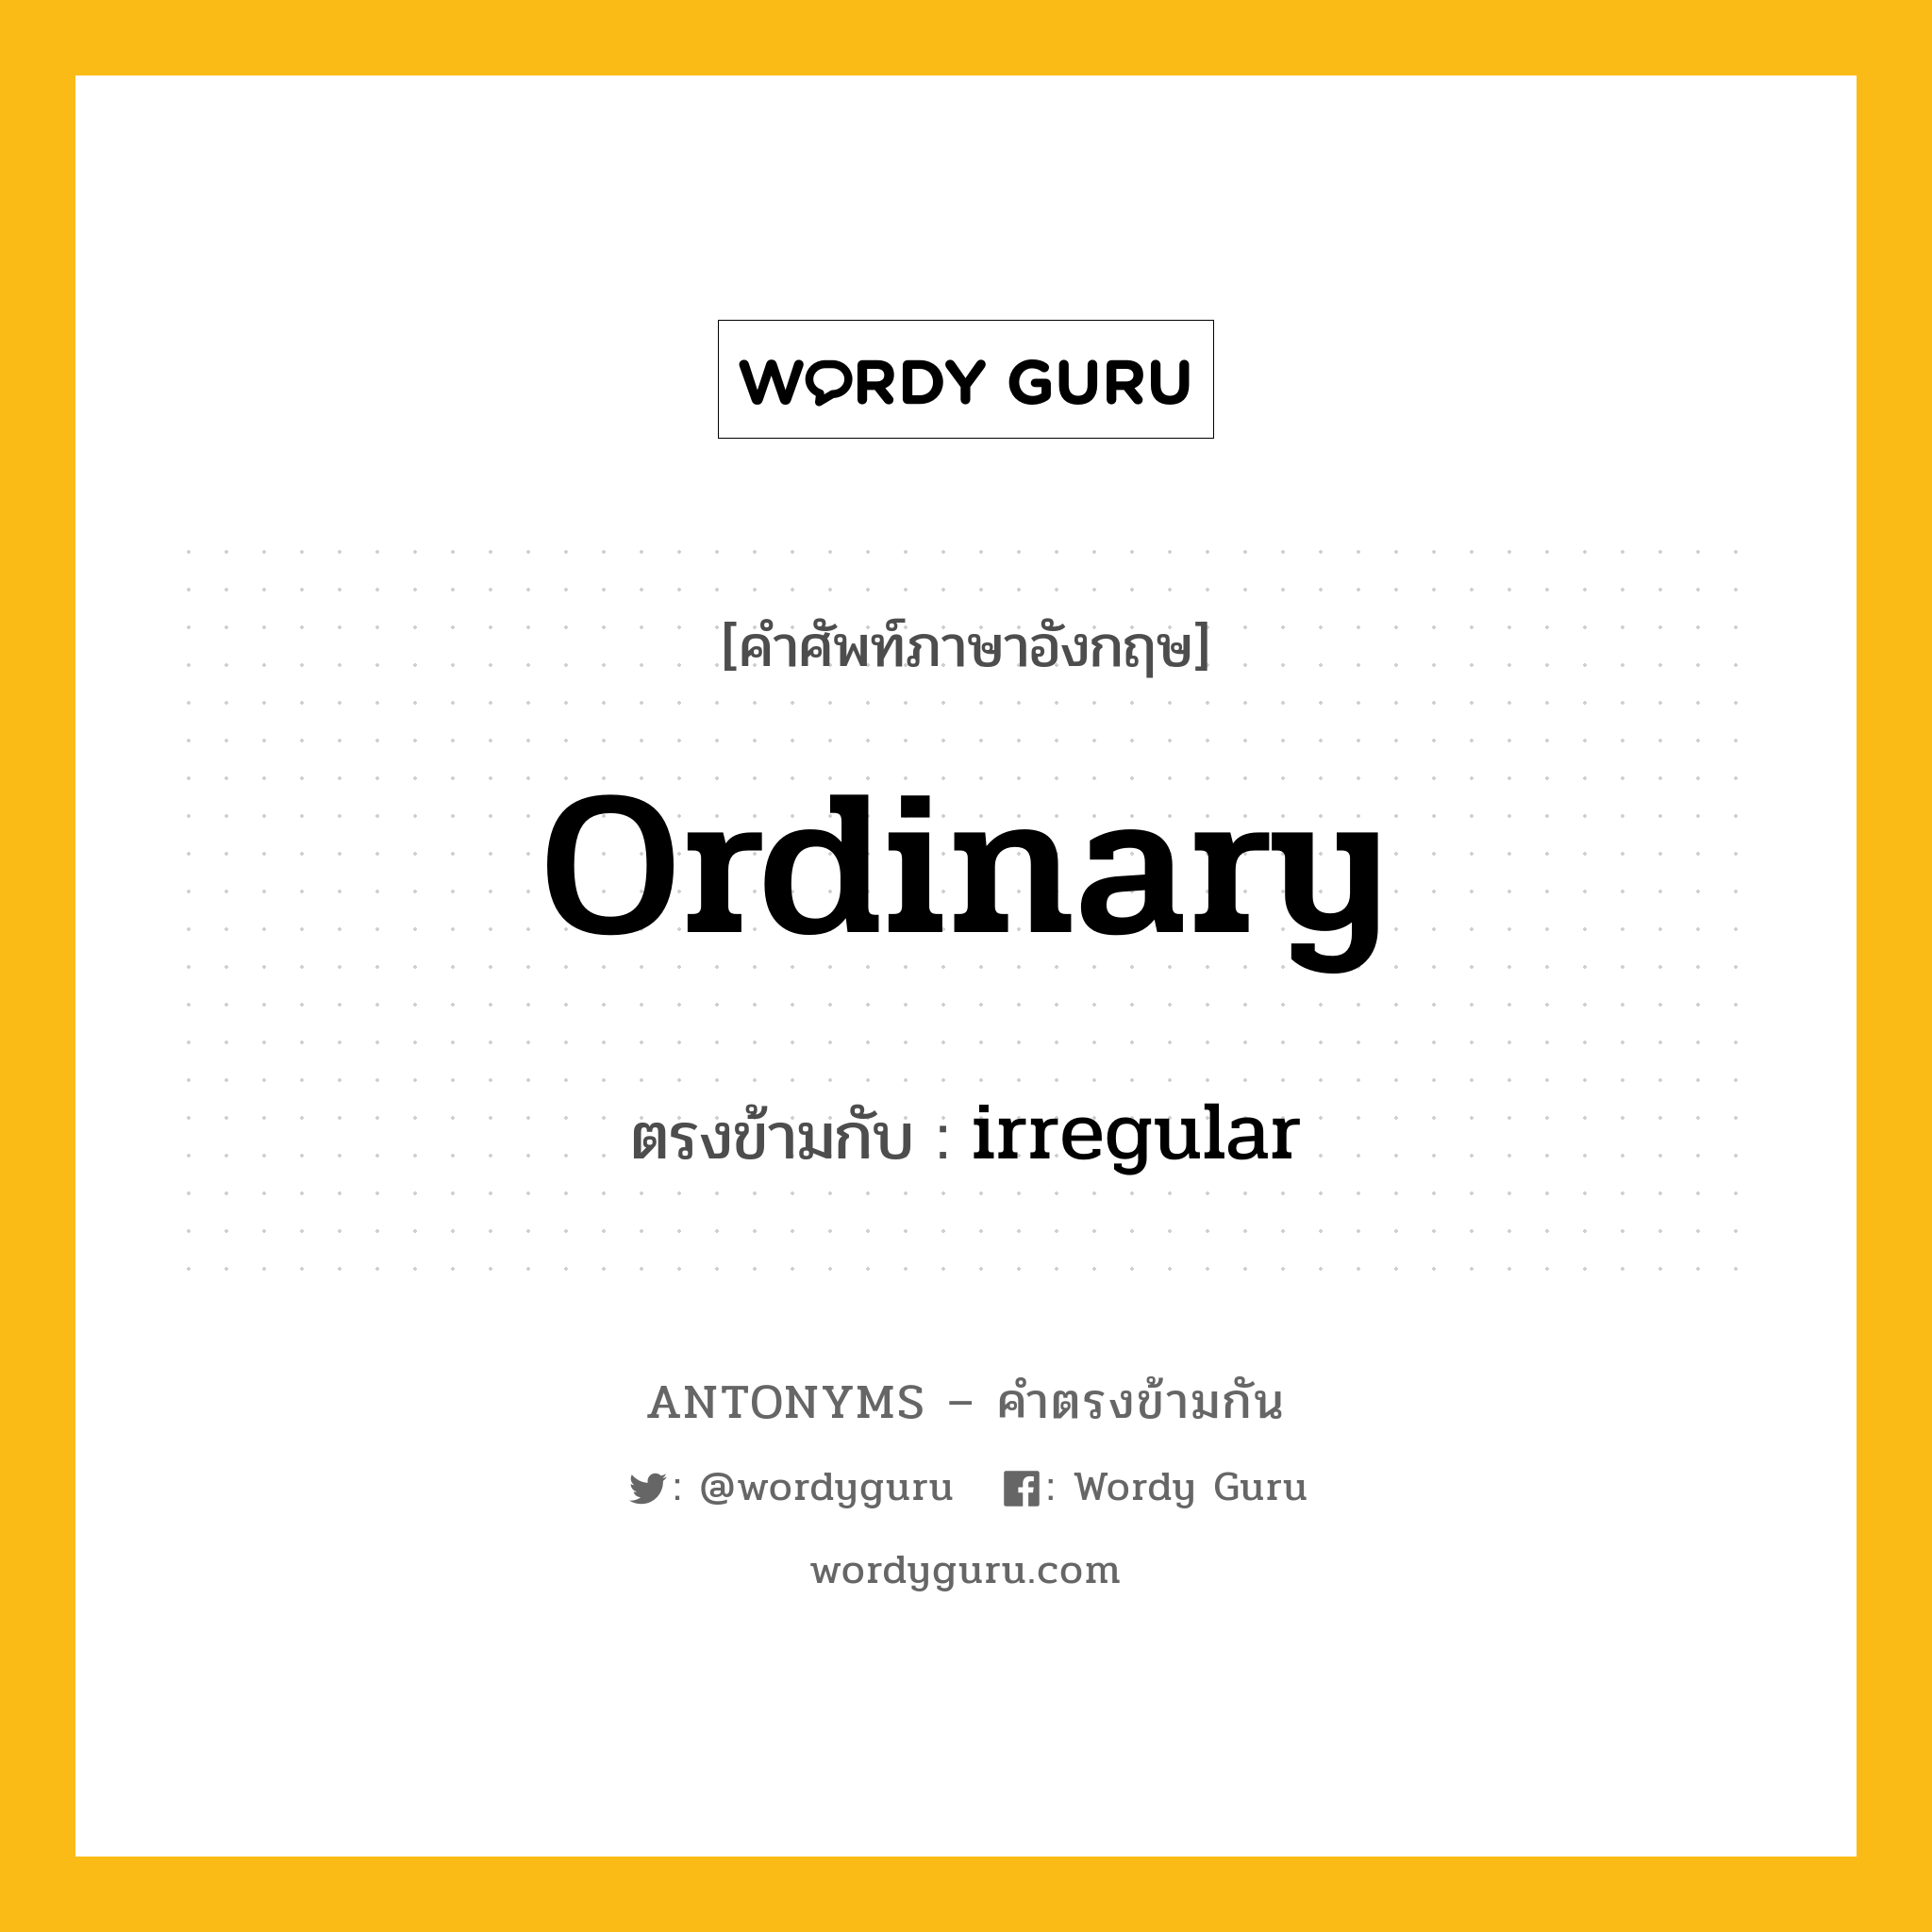 ordinary เป็นคำตรงข้ามกับคำไหนบ้าง?, คำศัพท์ภาษาอังกฤษ ordinary ตรงข้ามกับ irregular หมวด irregular